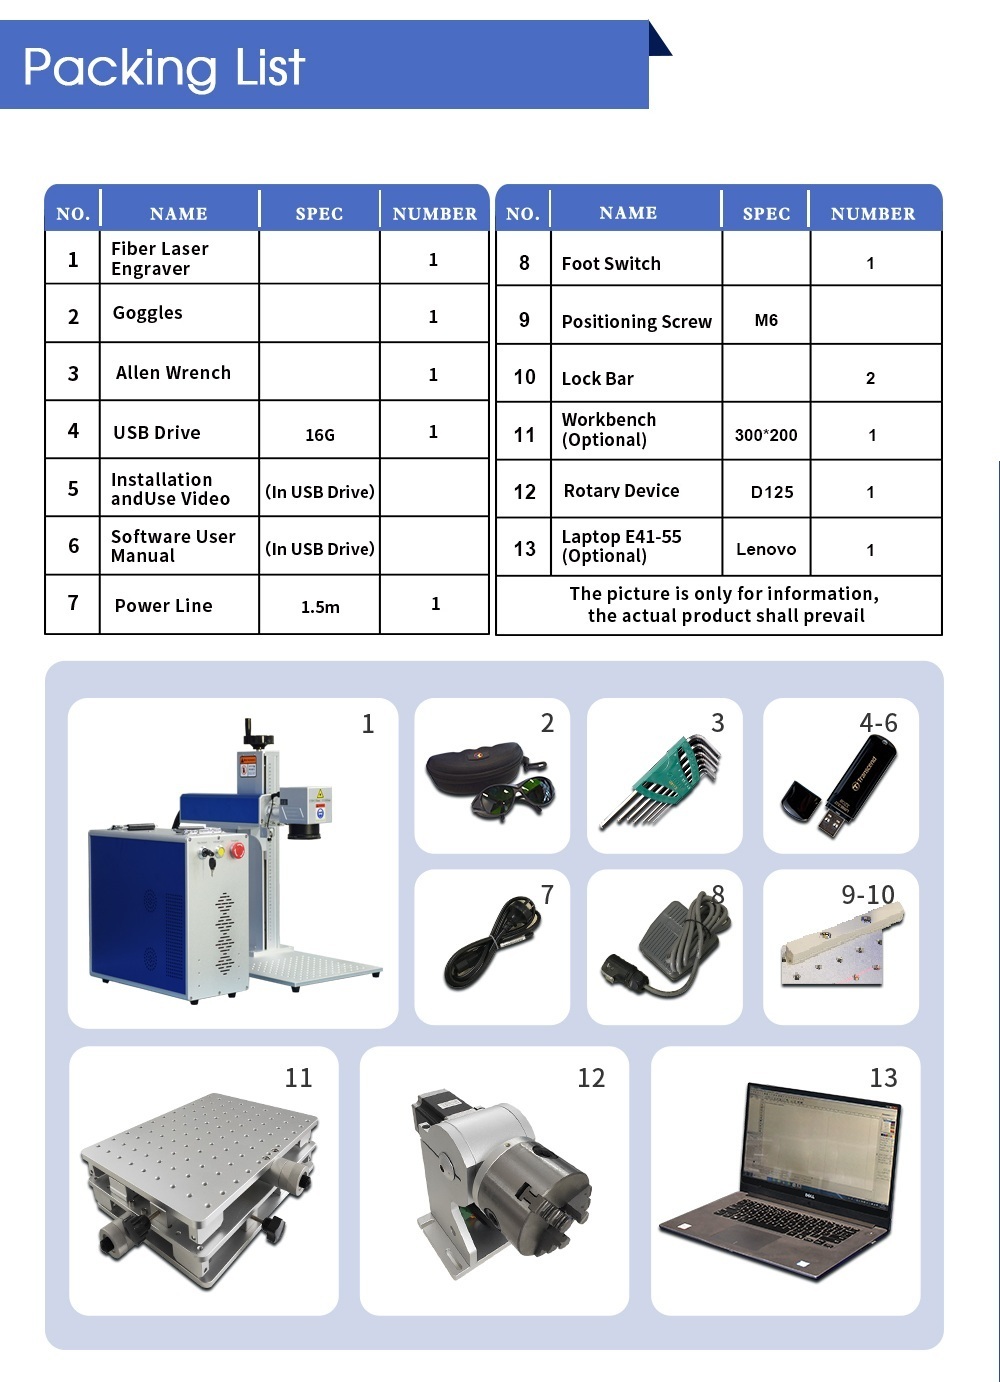 SFX Laser 60W JPT MOPA M7 Fiber Laser Marking Engraver Machine  (YDFLP-60-M7-M-R)